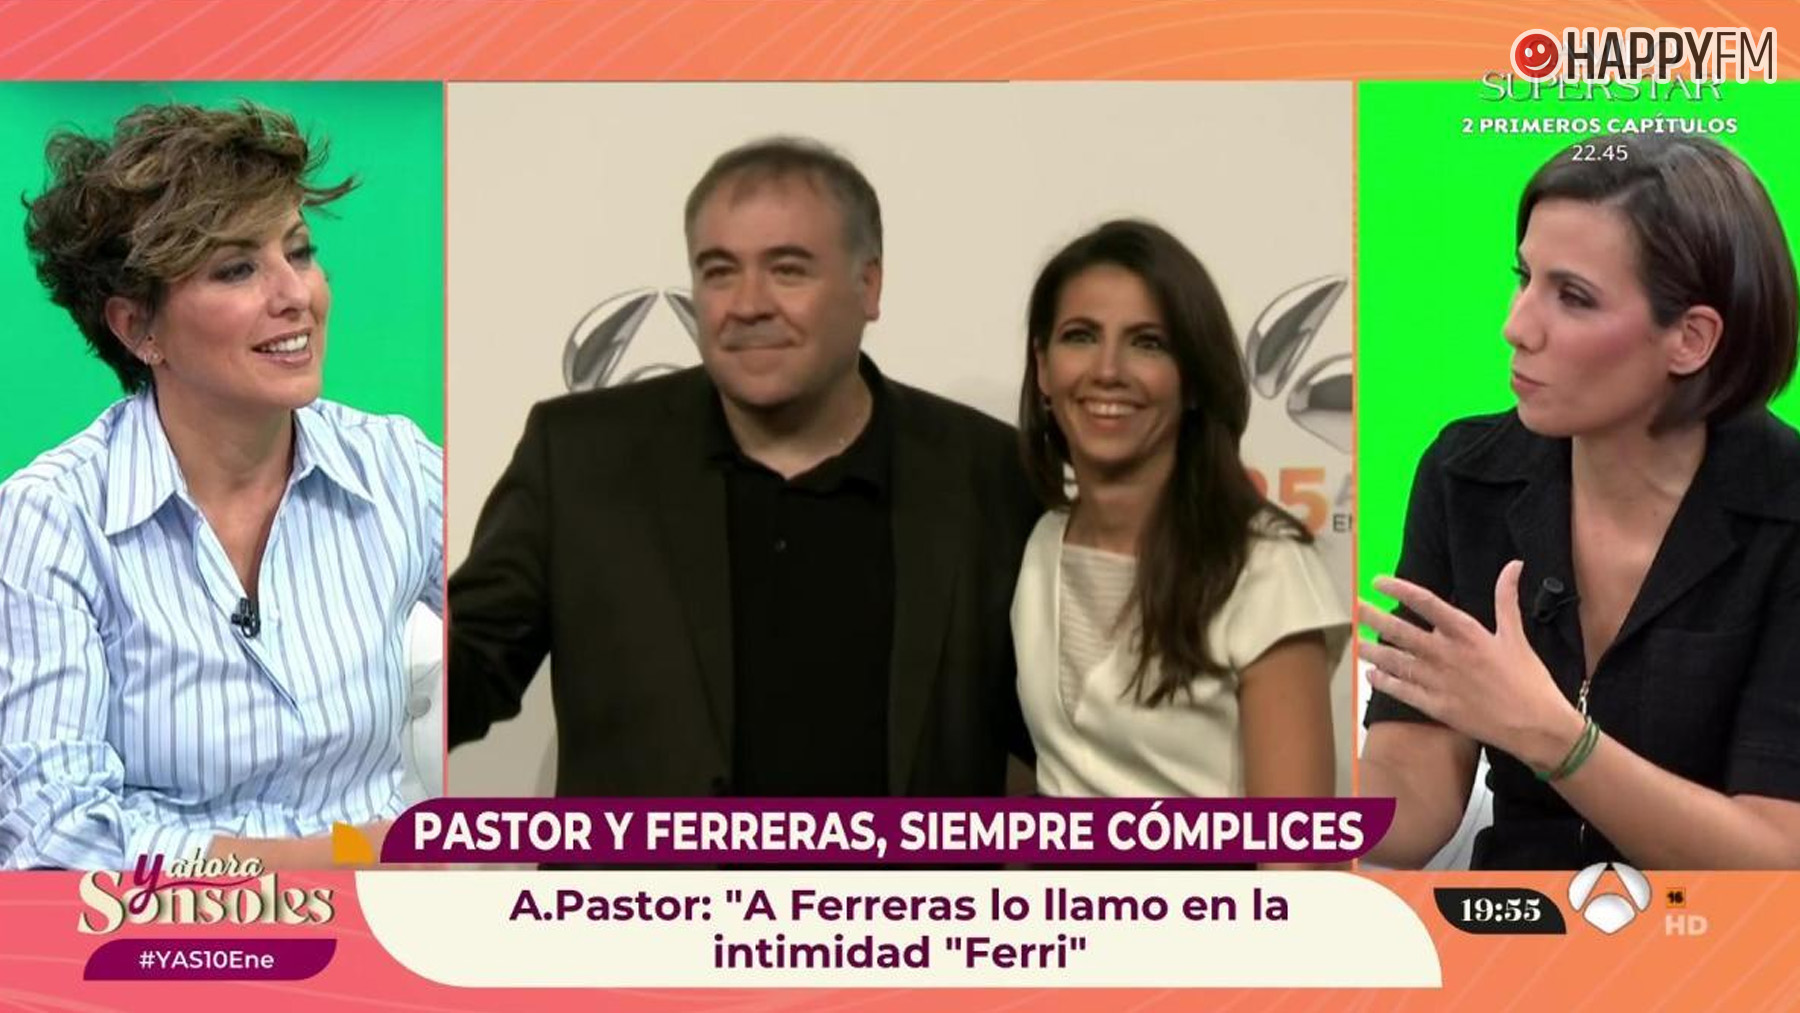 ‘Y ahora Sonsoles’: Ana Pastor confiesa a Sonsoles Ónega cómo llama a Antonio Ferreras en casa